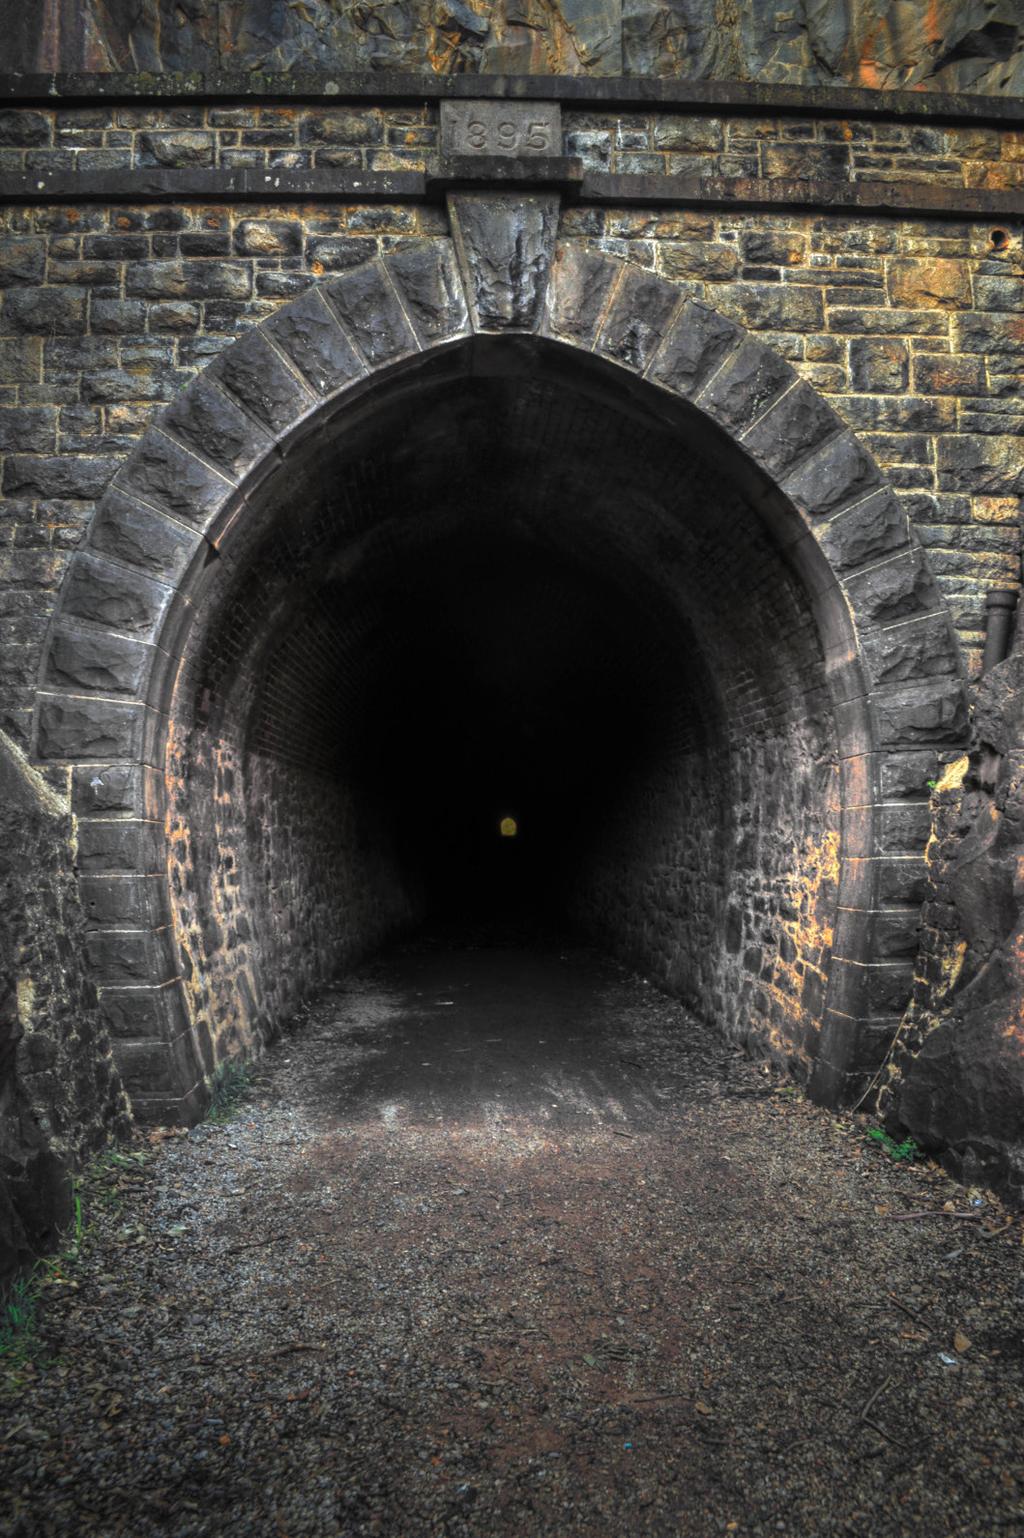 Resumen del libro El Túnel